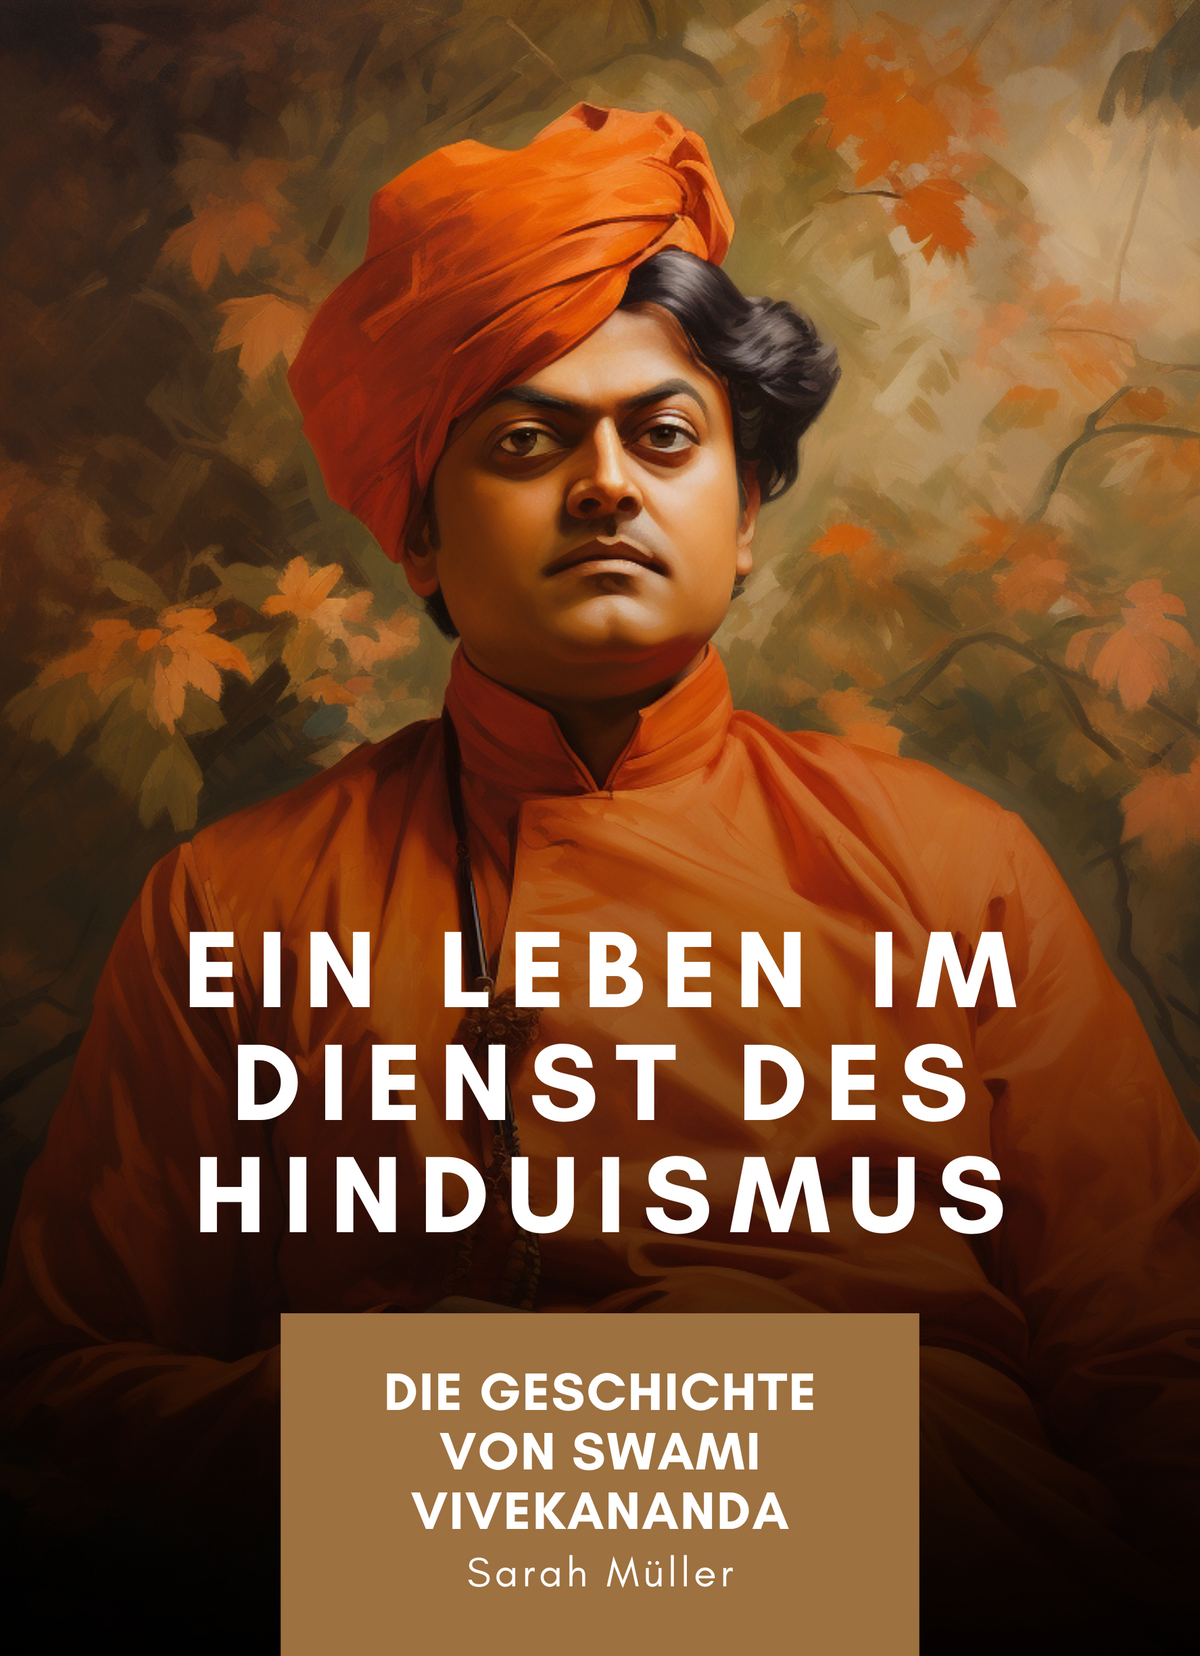 Die Geschichte von Swami Vivekananda